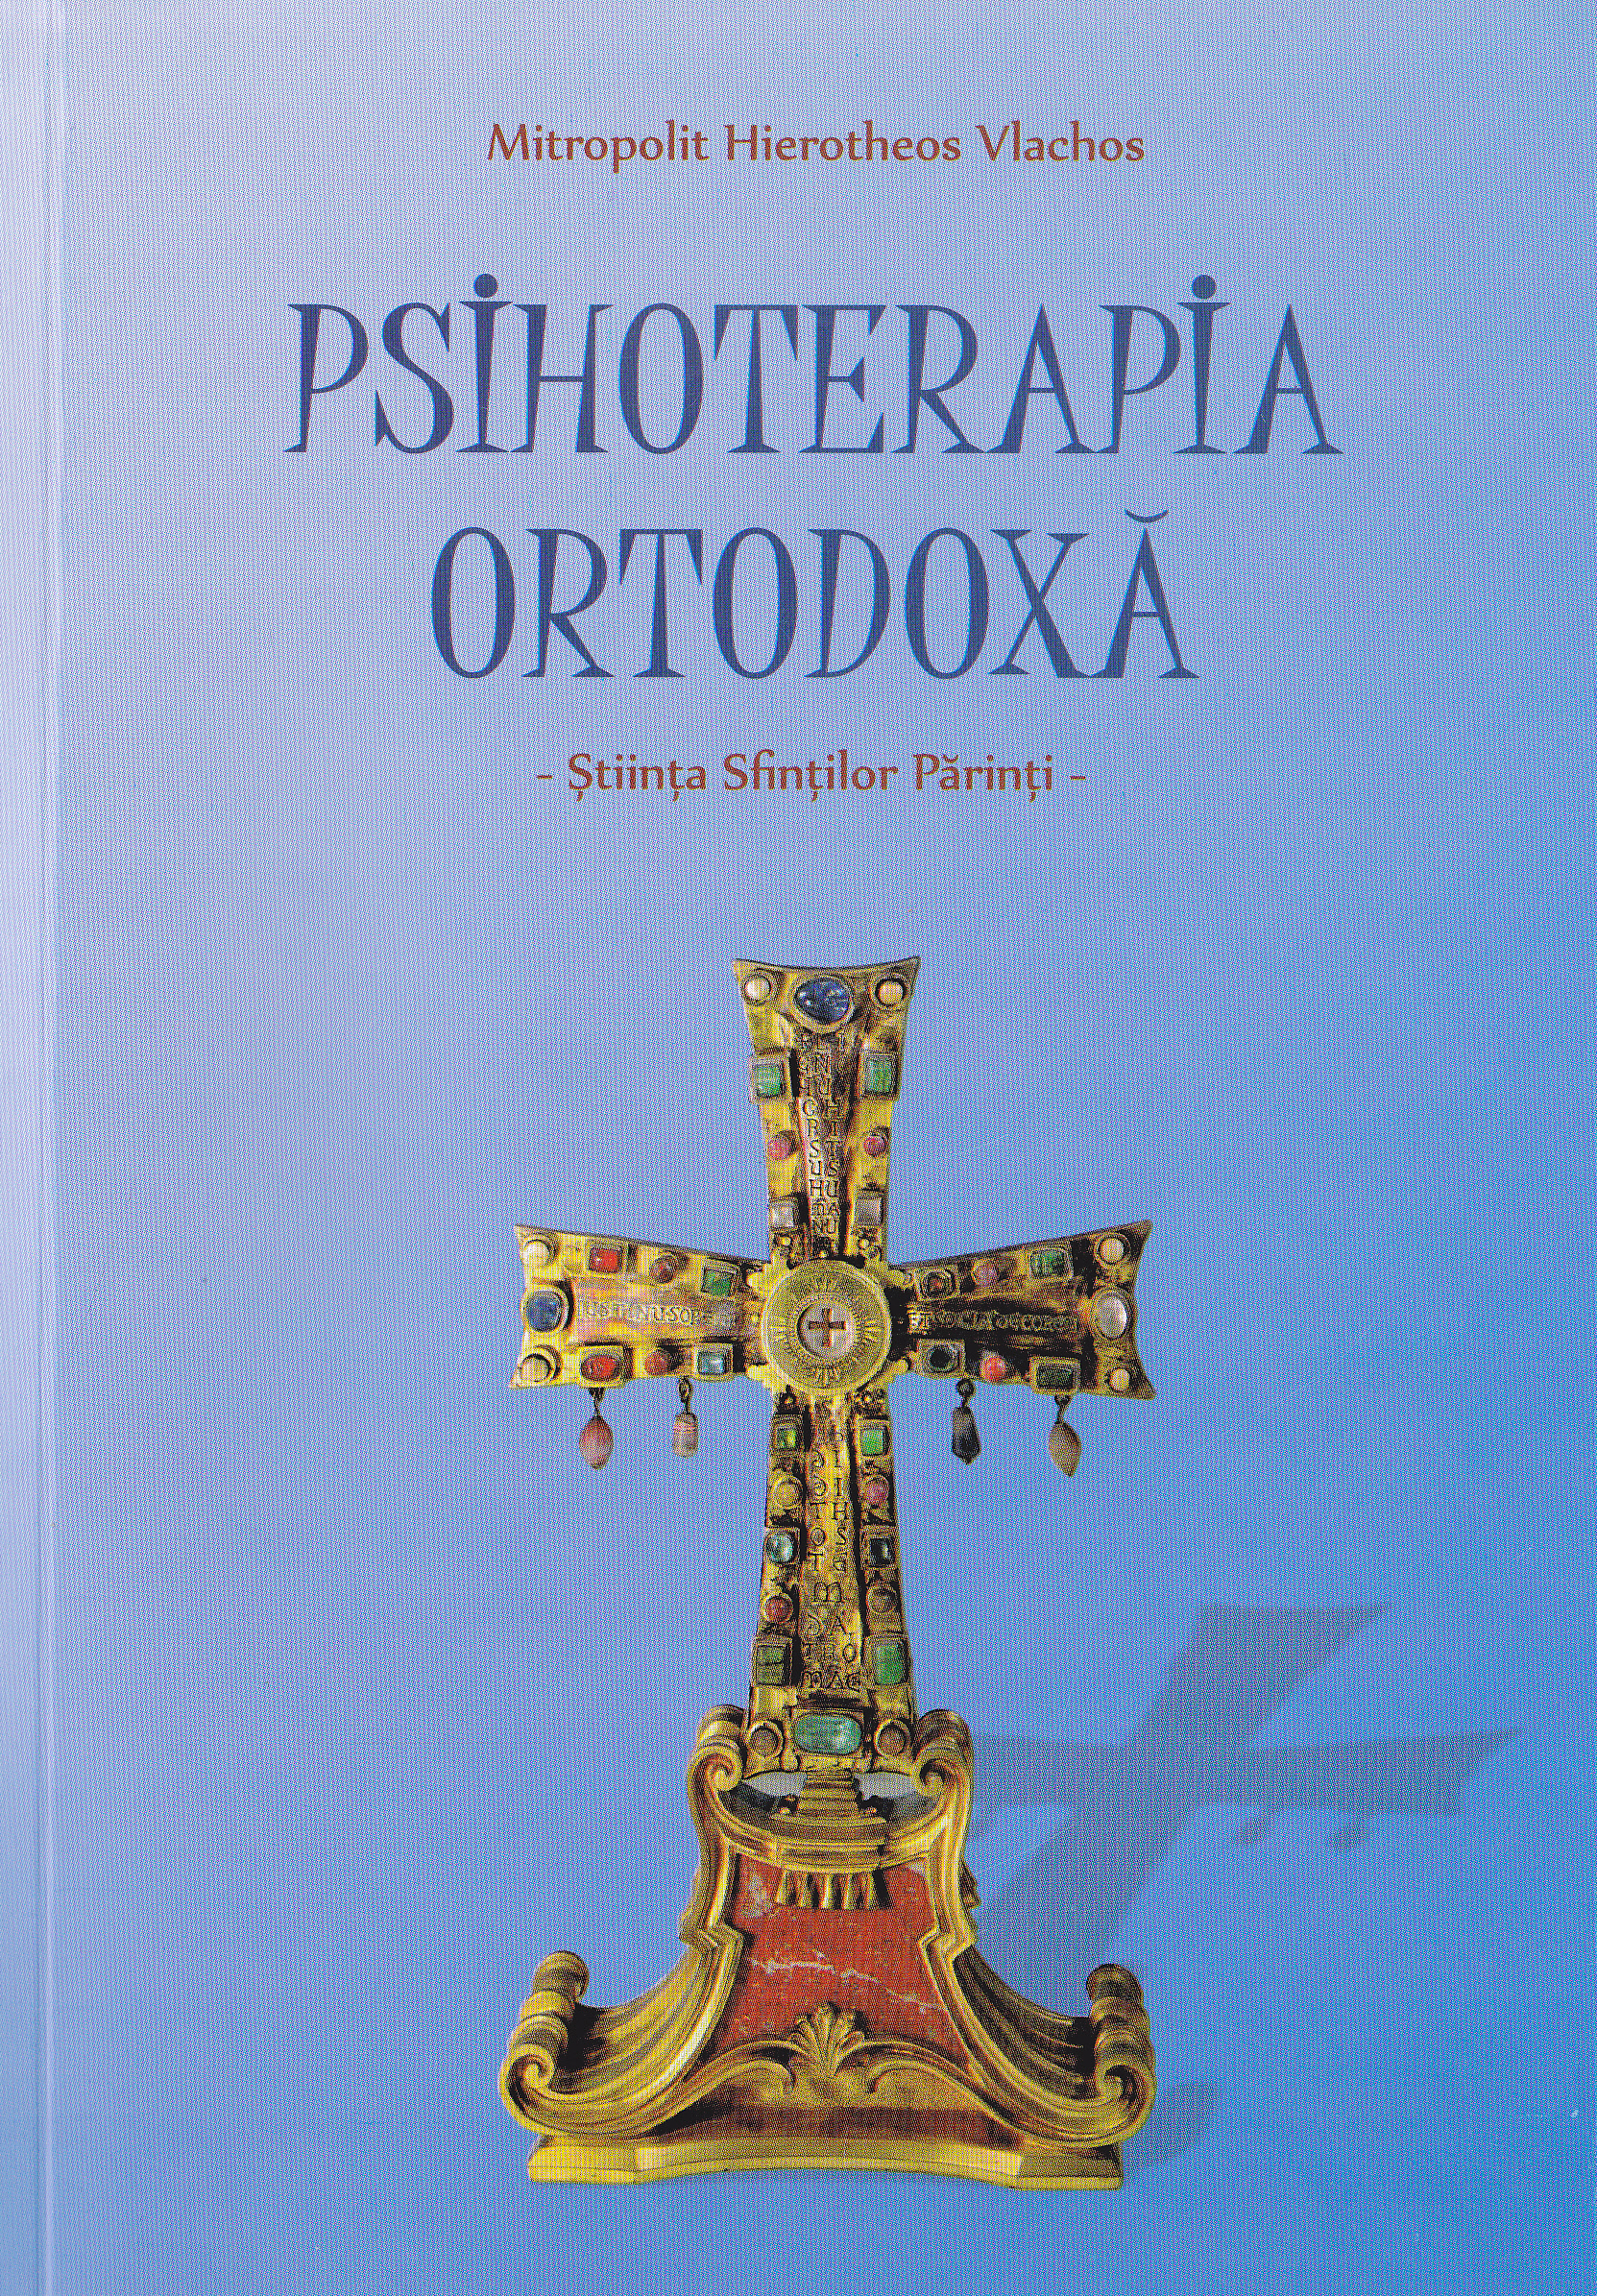 Psihoterapia ortodoxa - Mitropolit Hierotheos Vlachos